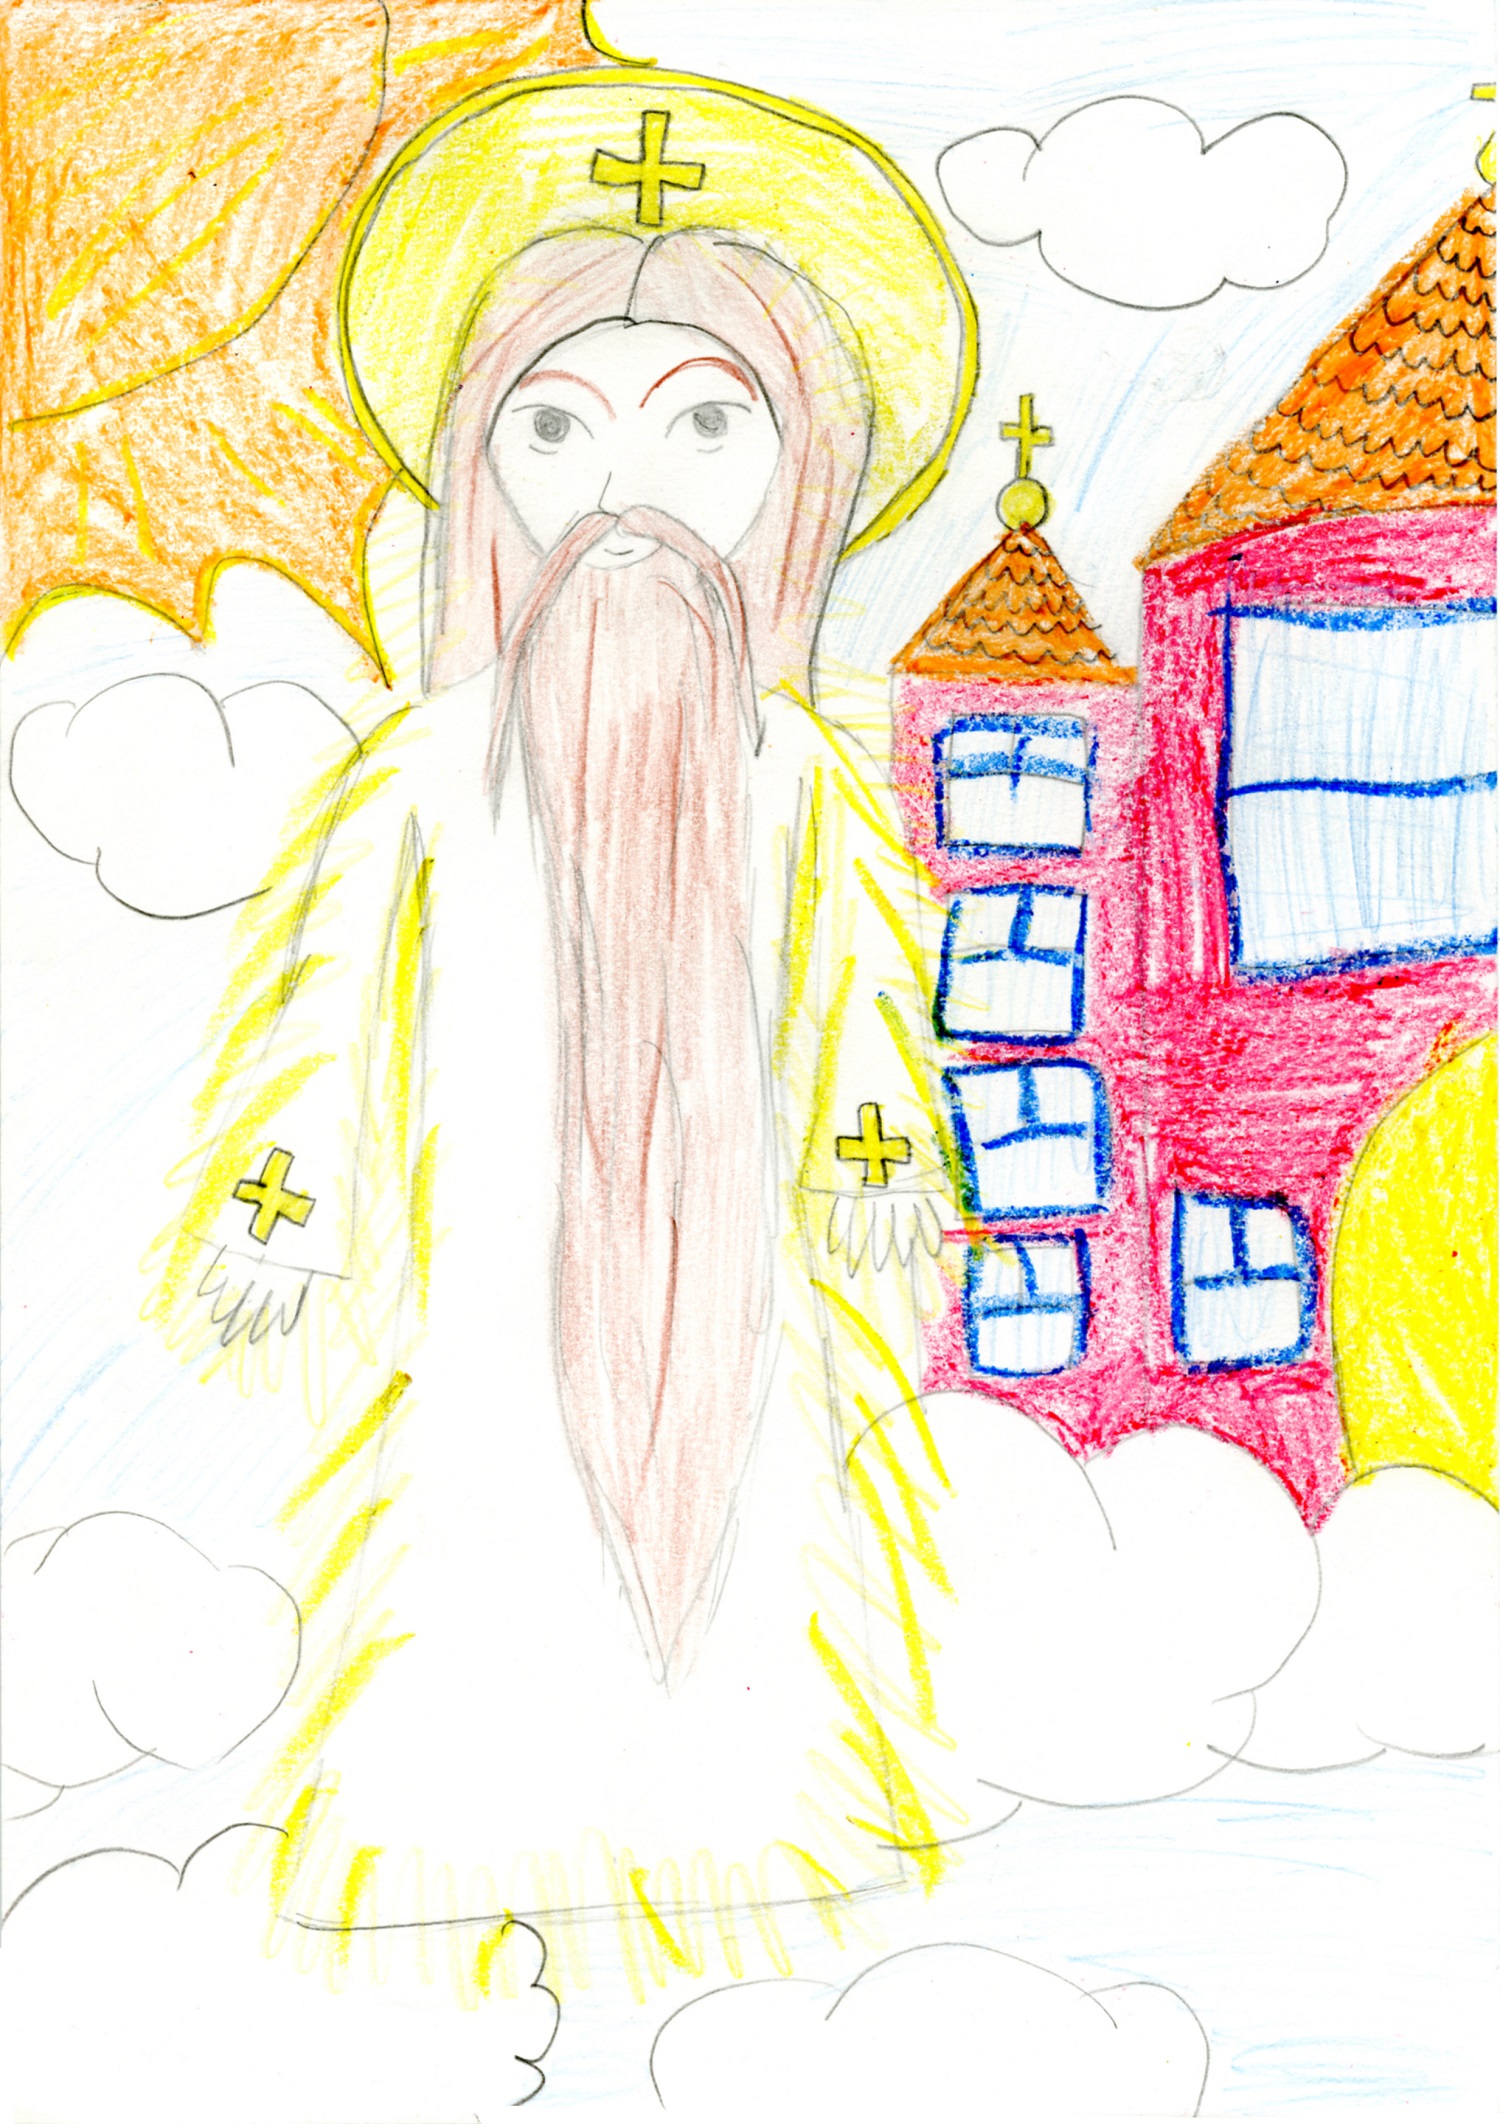 Anciano barbudo. Leyenda del niño: “Dibujé a Dios, dibujé el castillo, Dios y los ángeles viven allí”